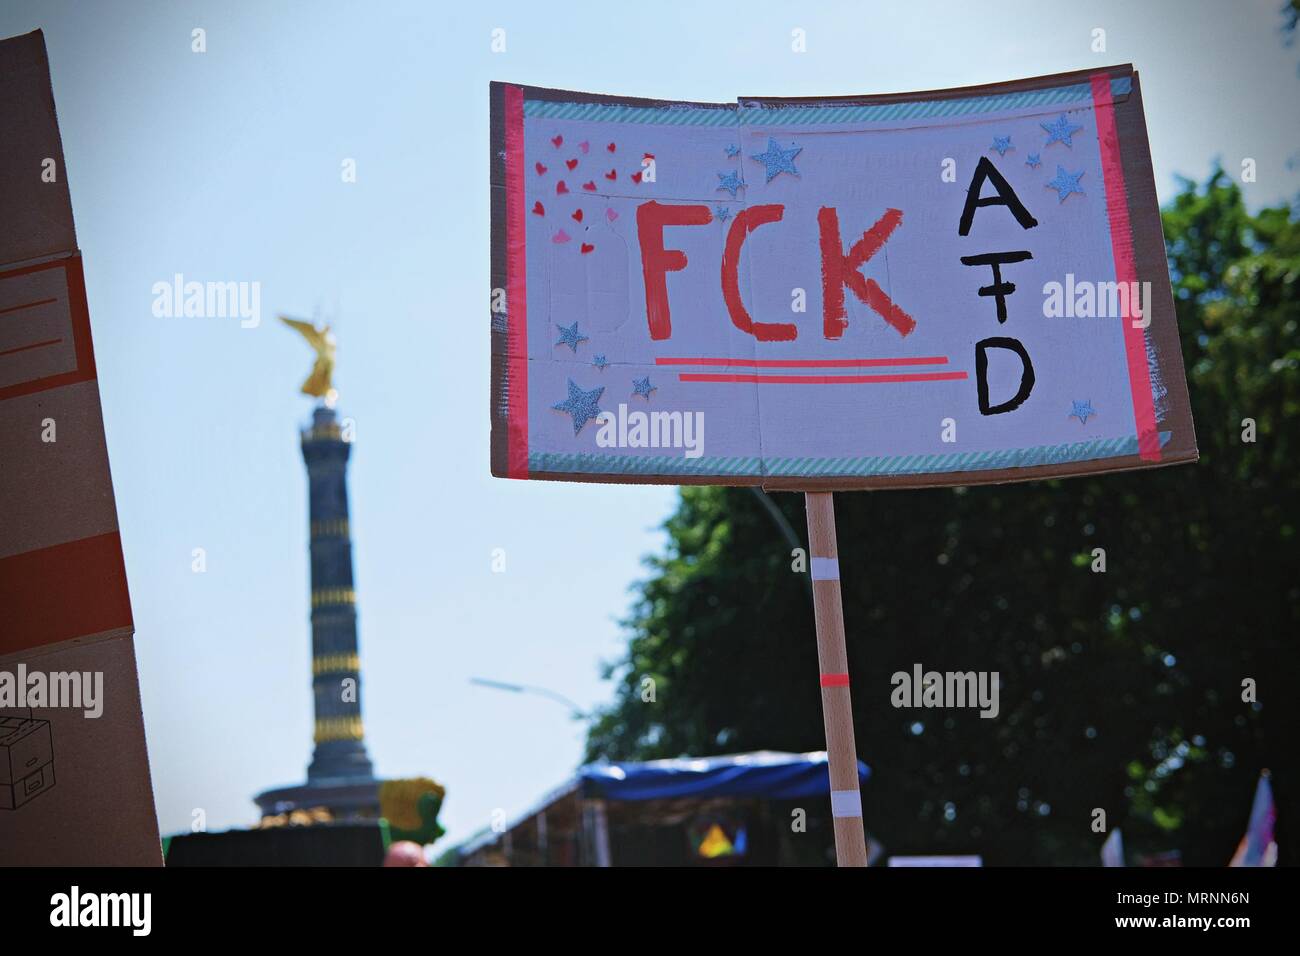 Berlin, Allemagne. 27 mai, 2018. Une affiche de l'écriture sur c 'FCK AFD' vu pendant la manifestation.les amateurs de techno et à la lutte contre le racisme, les militants ont défilé à Berlin contre un rassemblement organisé par le parti d'extrême droite allemande, l'AFD. Plus de 70.000 personnes (selon les organisateurs) ont pris les rues de Berlin avec une grande fête organisée par certains des plus célèbres clubs techno de Berlin. Plusieurs démos compteur ont eu lieu le long de la capitale Allemande pour protester contre le rallye de l'AFD qui a commencé à la gare principale et terminé à la Brandenburger Tor avec des centaines de participants. (Crédit Image : © Banque D'Images